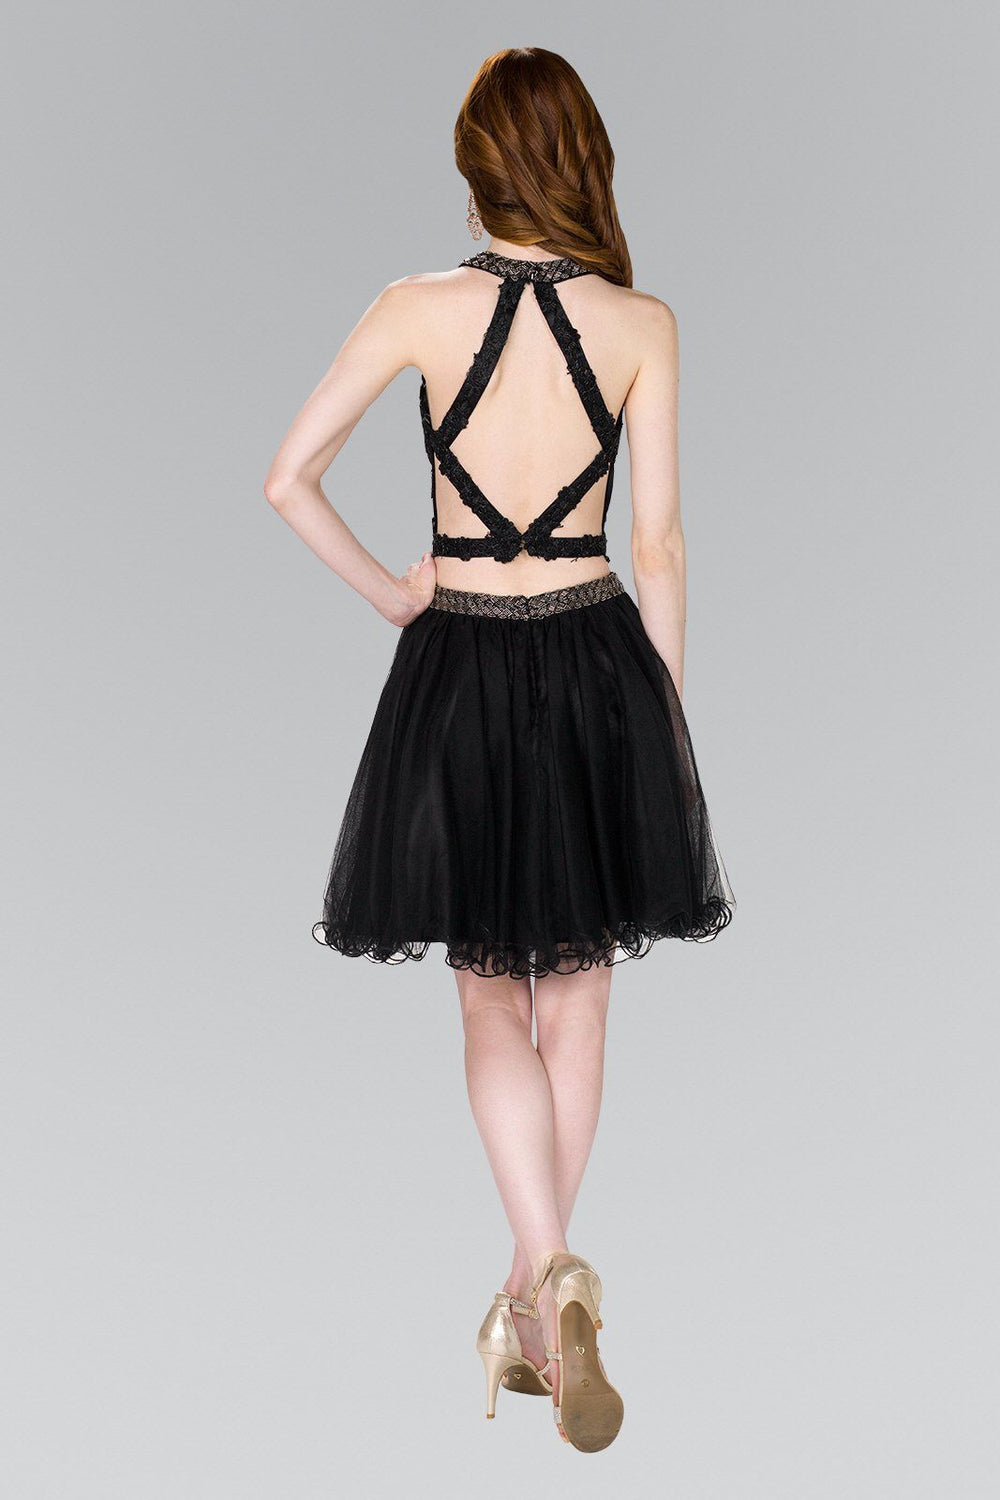 Short Open Back Two Piece Black Dress by Elizabeth K GS2398-Short Cocktail Dresses-ABC Fashion